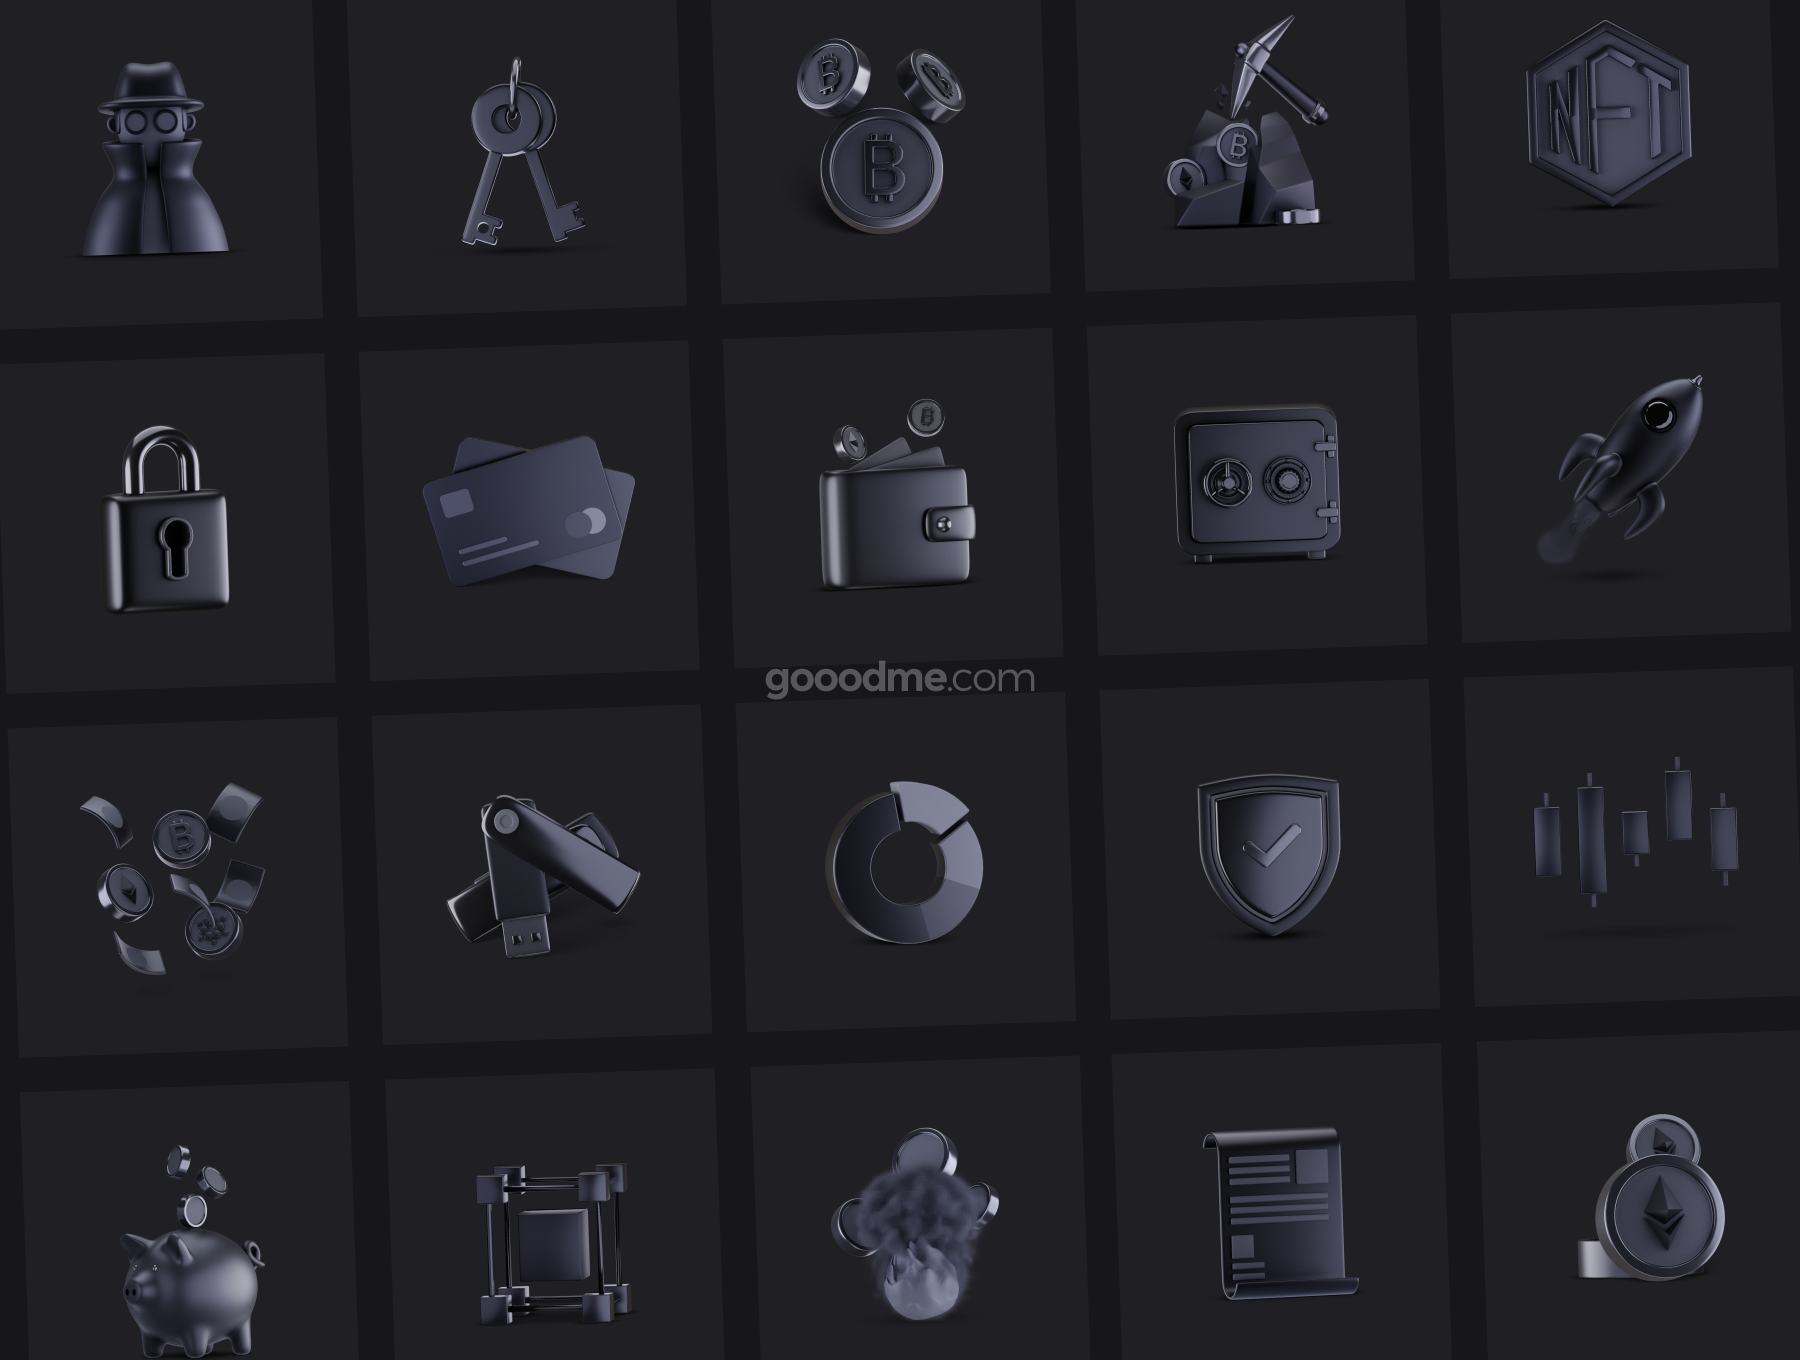 60款暗黑质感金属加密货币金融交易3D立体icon图标png免抠素材3D Crypto Icon Set